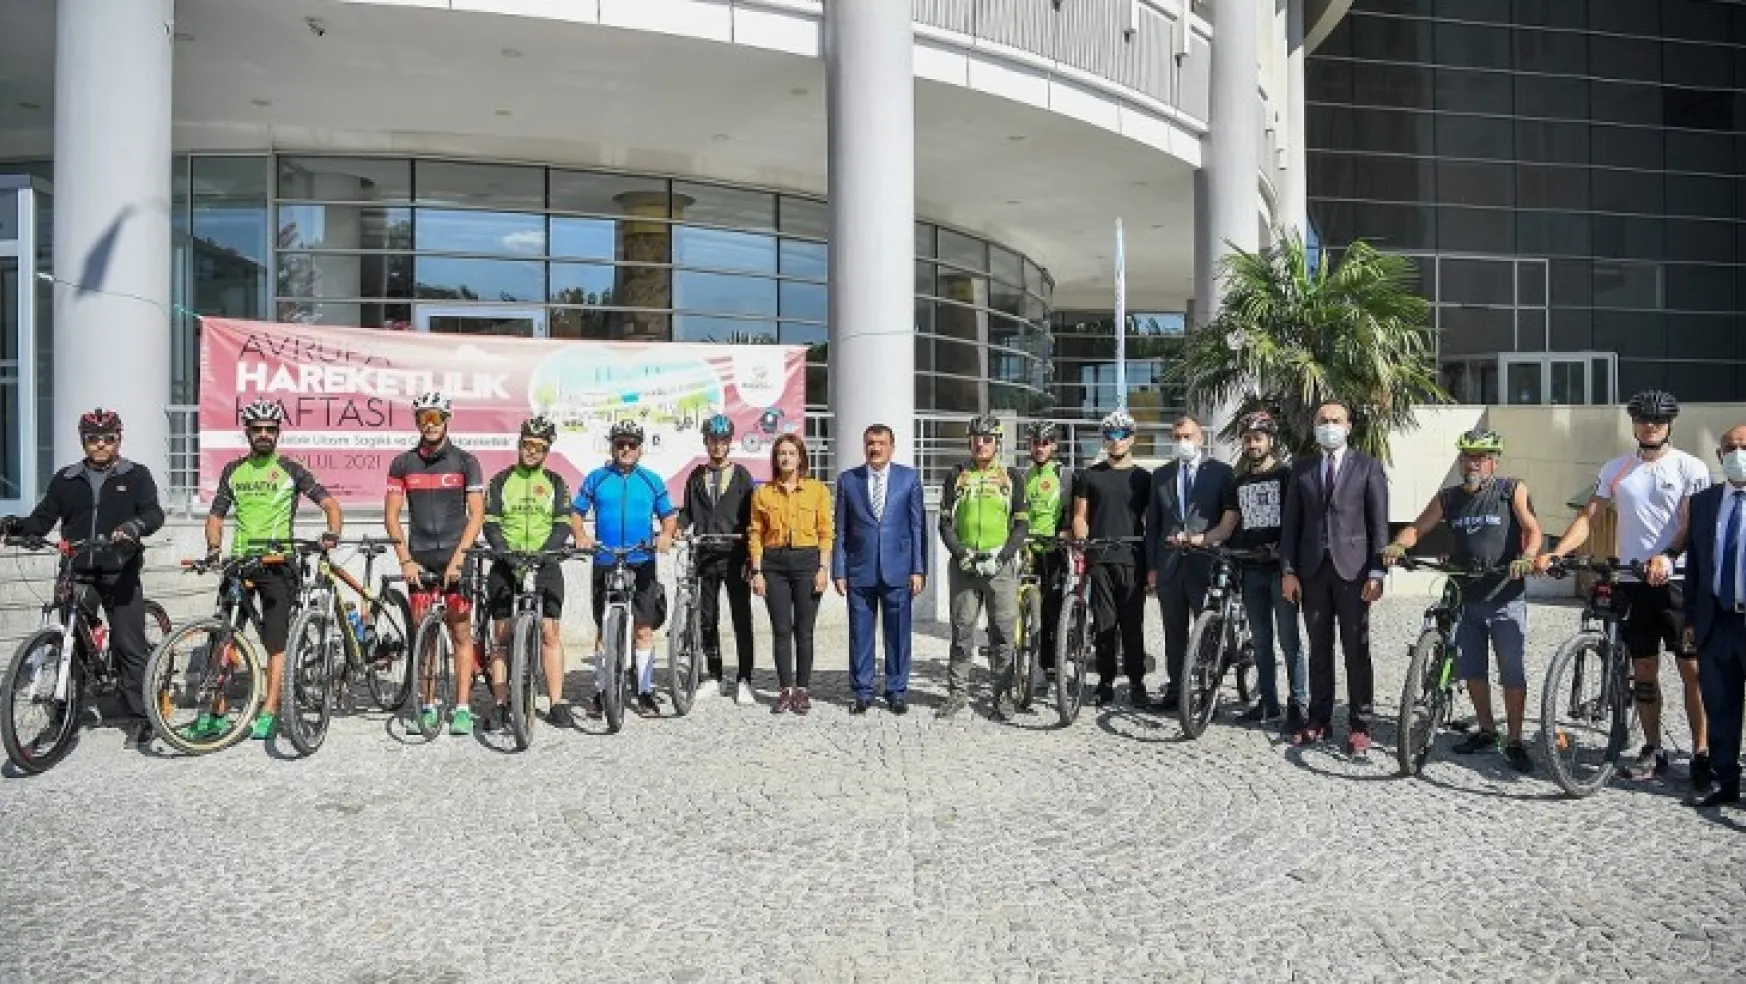 Avrupa Hareketlilik Haftası Etkinlikleri Kapsamında Bisiklet Turu Yapıldı